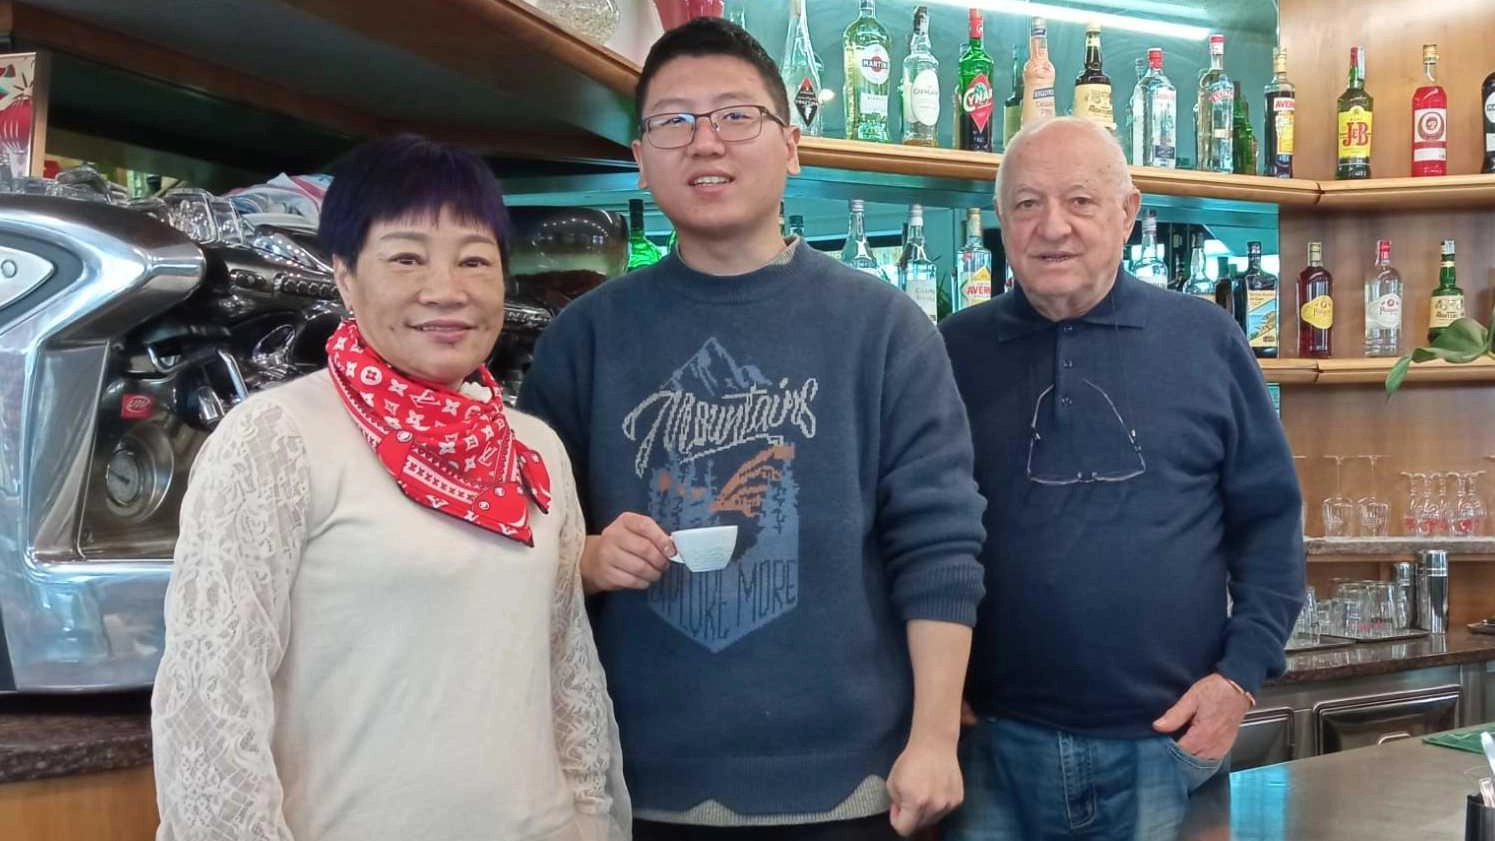 Il bar “L’Incontro” alla Zecca passa alla famiglia cinese Dai